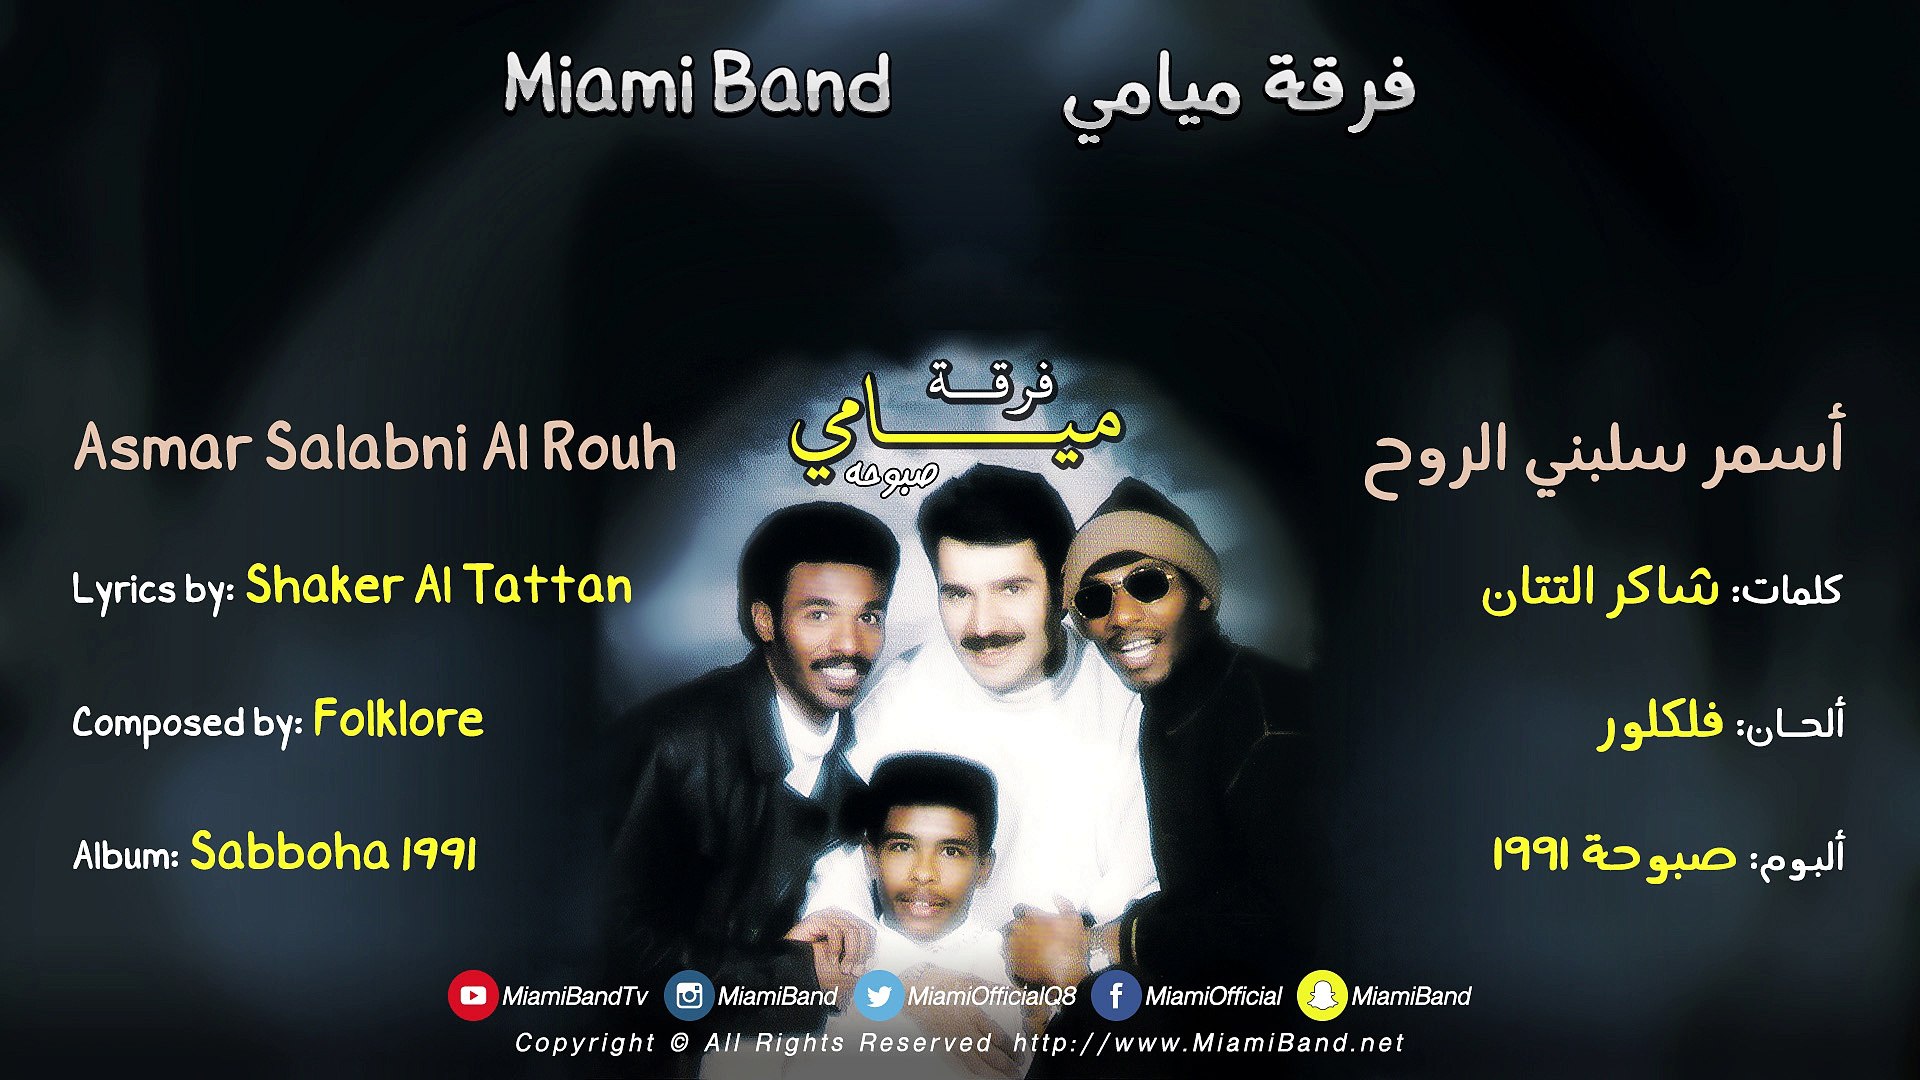 Miami Band Asmar Salabni Al Rouh 1991 فرقة ميامي أسمر